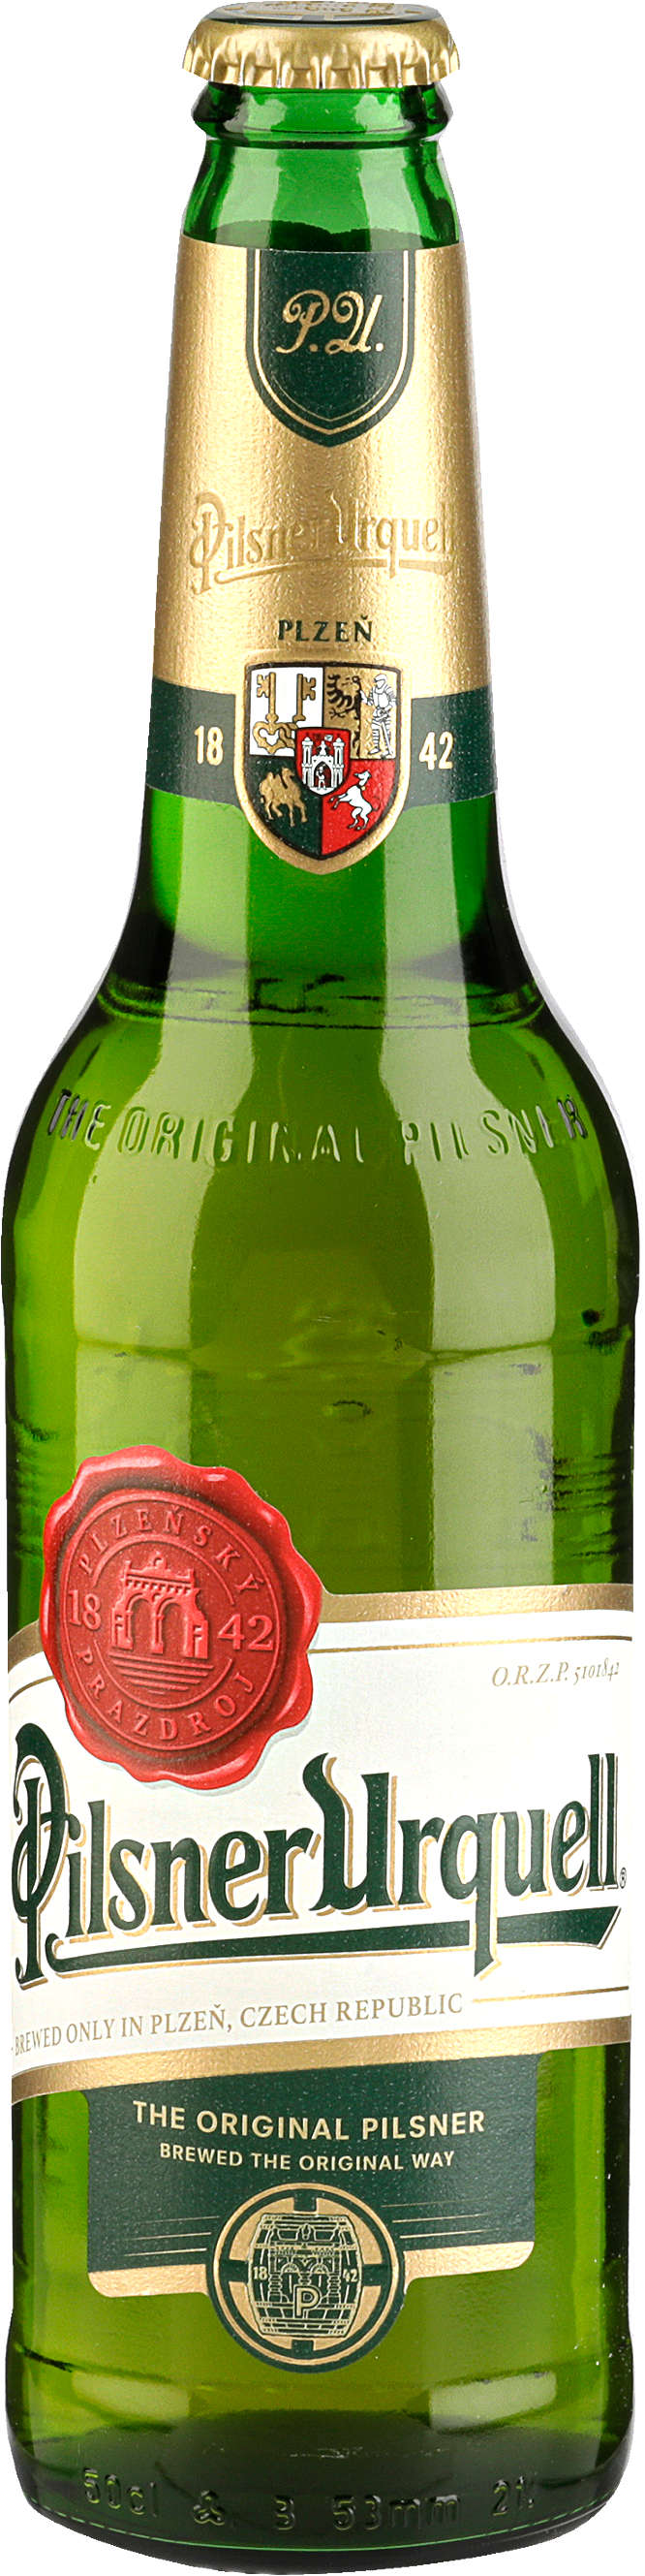 Zobrazit nabídku Pilsner Urquell Pivo světlý ležák